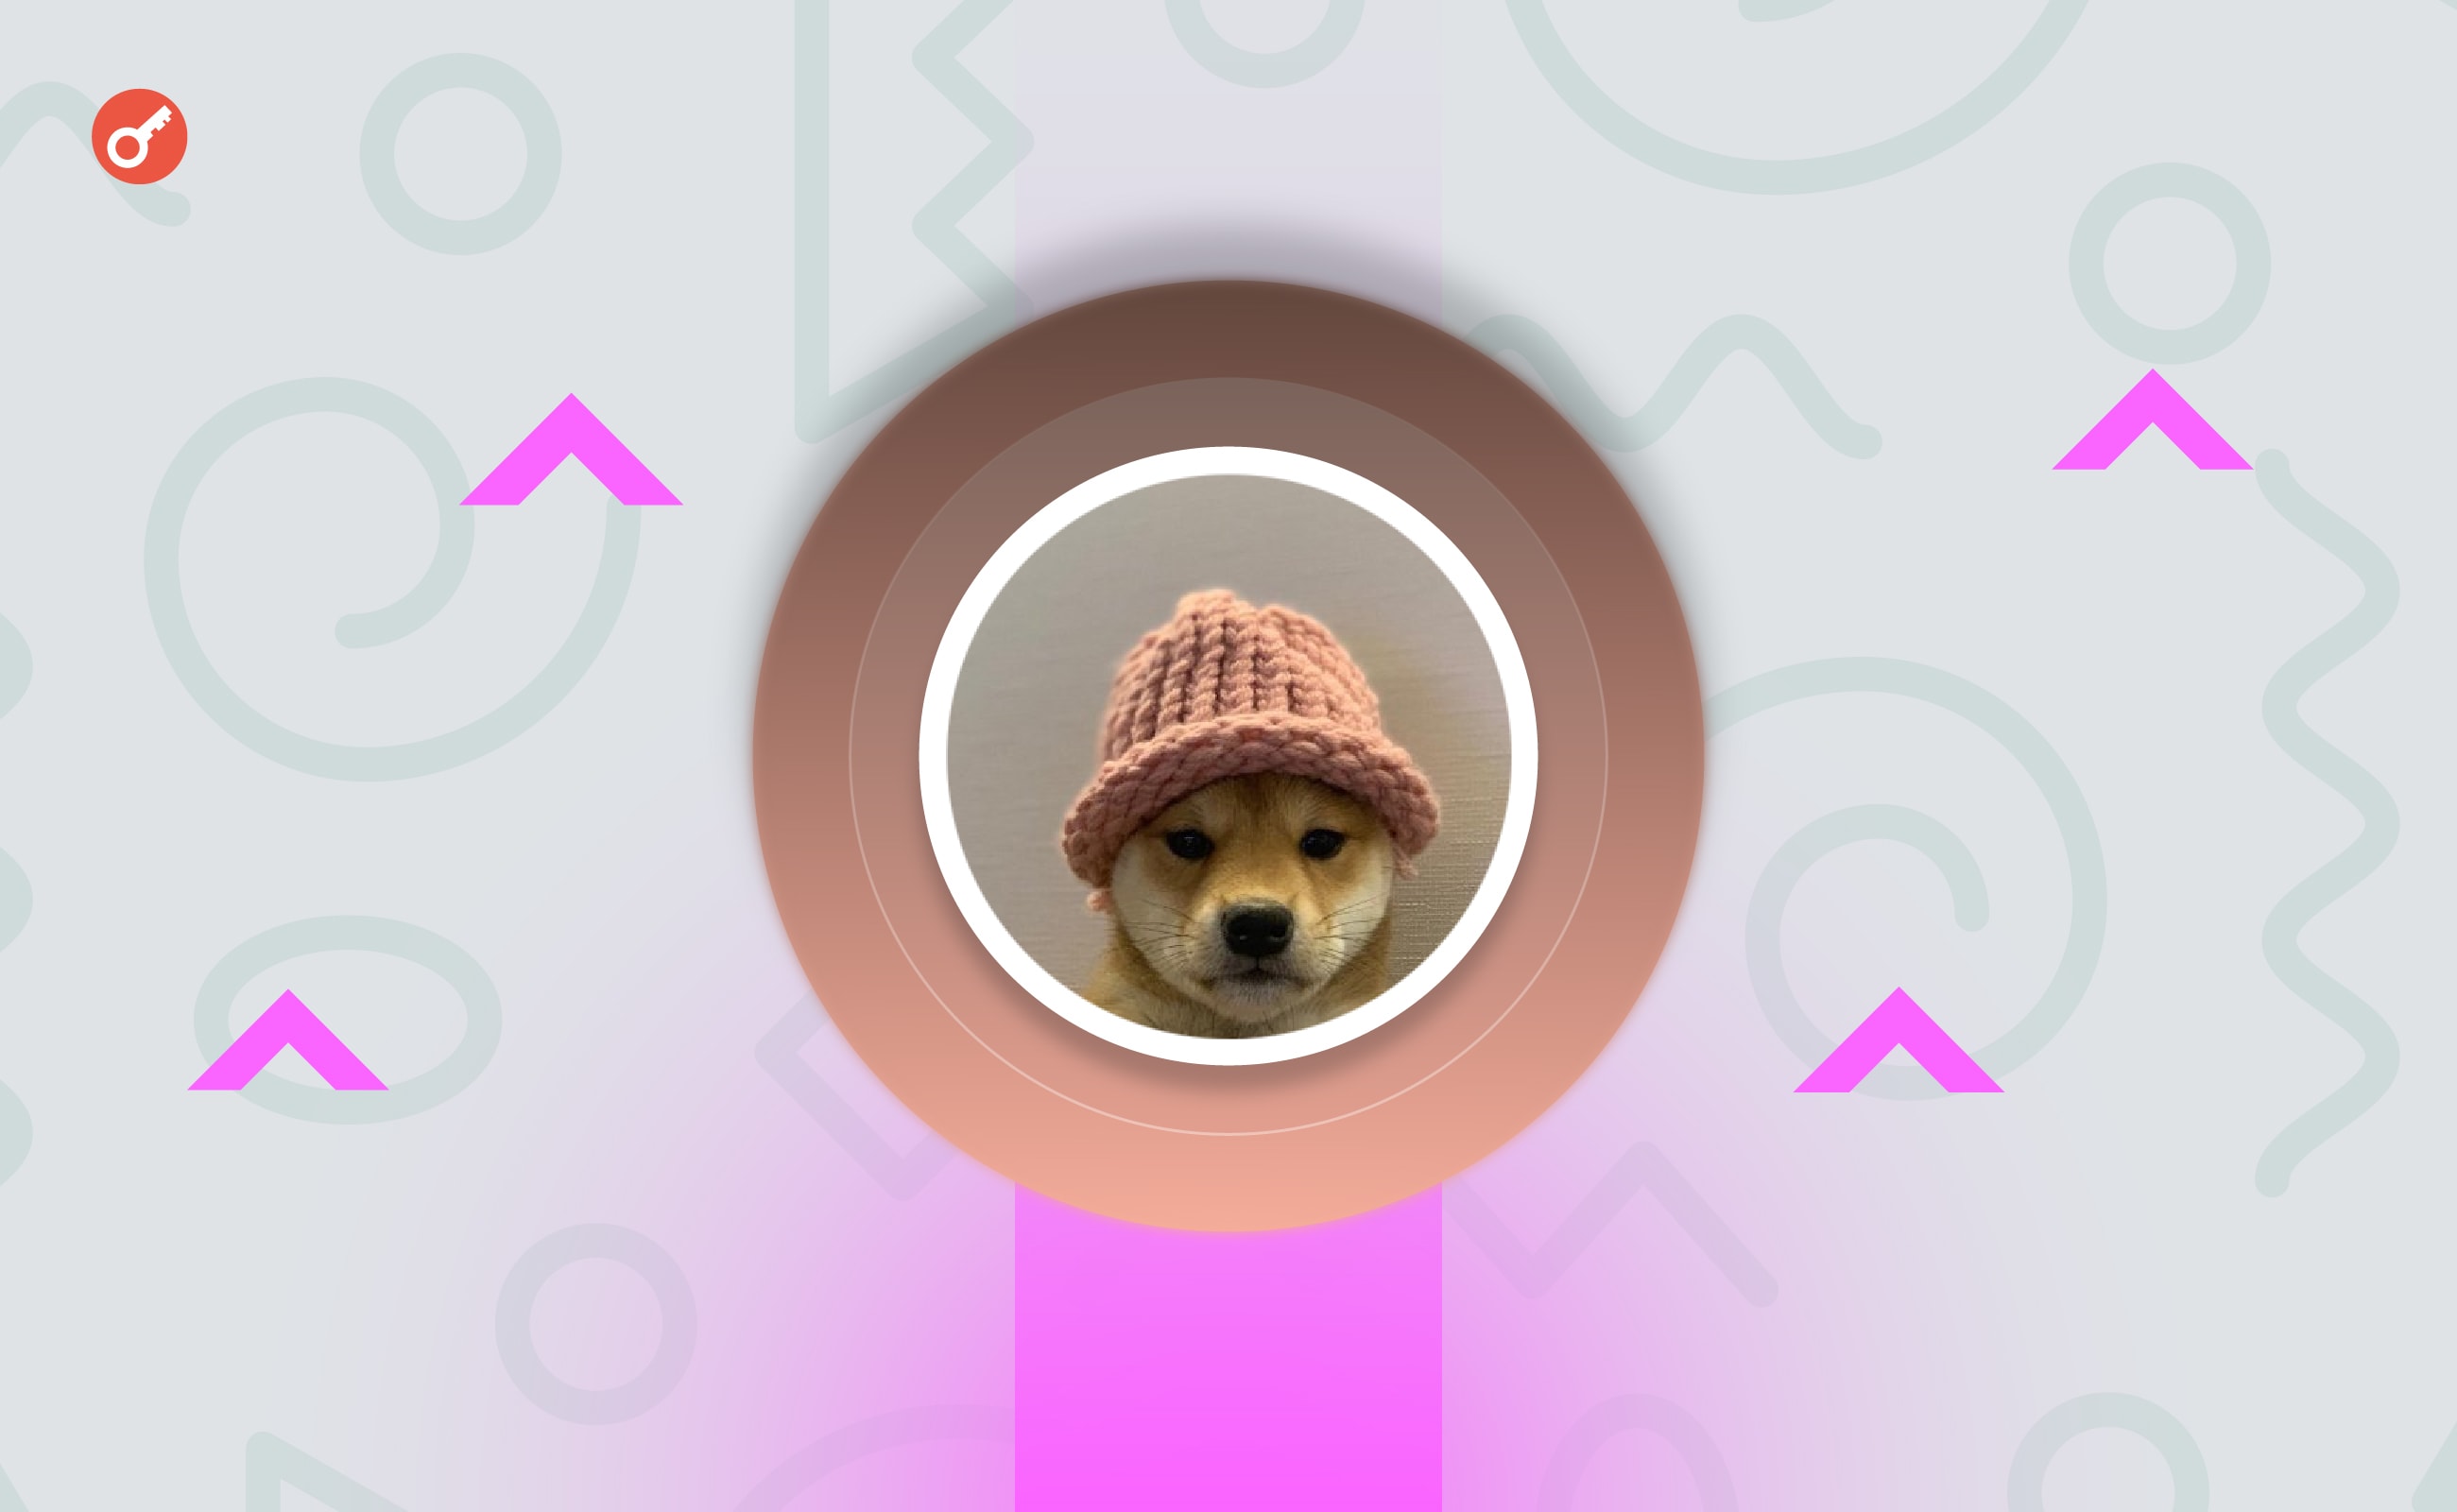 Фото пса с логотипа мемкоина Dogwifhat готовы купить в качестве NFT за $26 000. Заглавный коллаж новости.